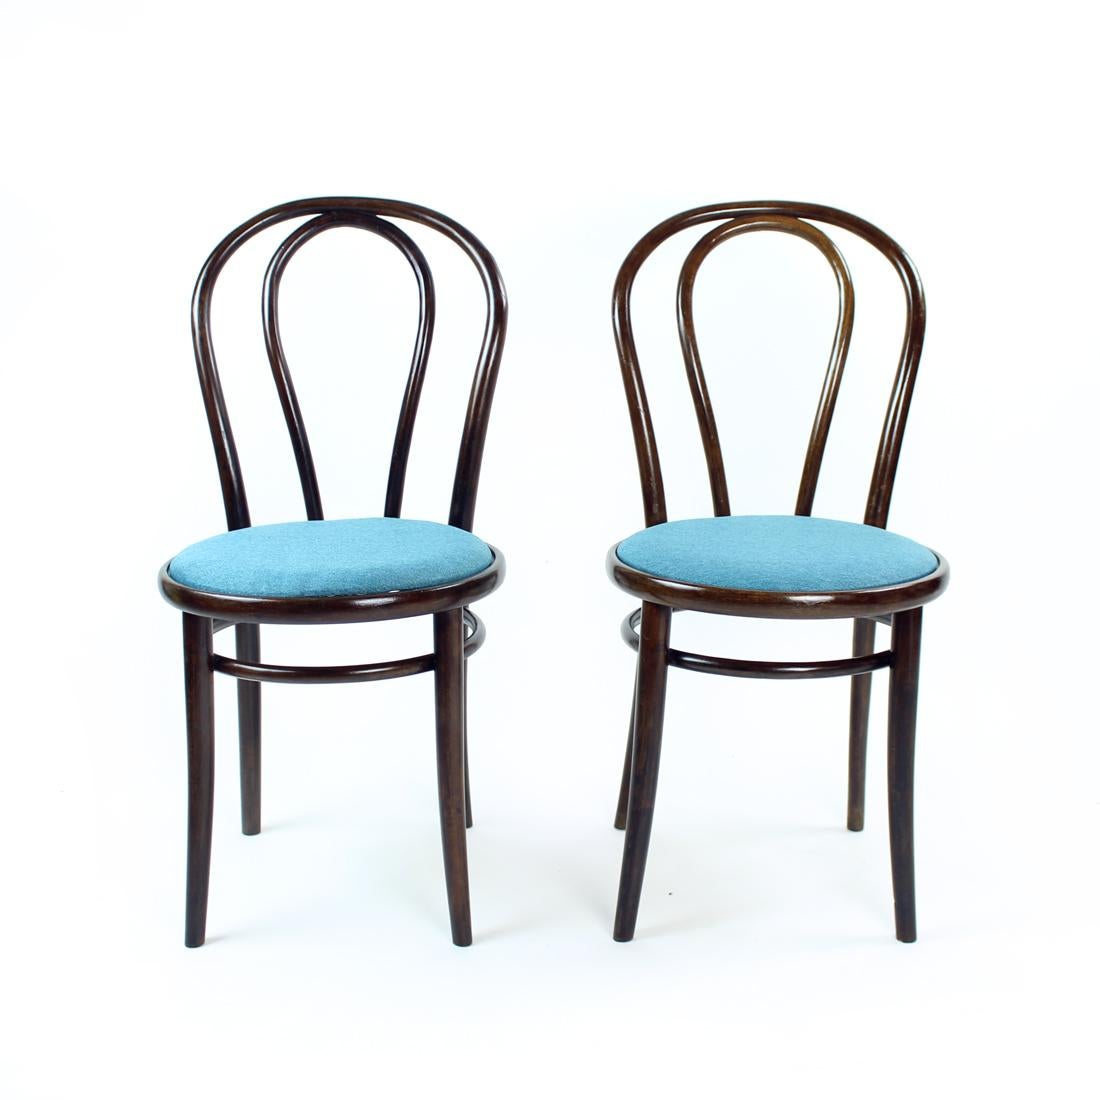 Magnifique chaise de salle à manger après une restauration complète. La chaise est le modèle Thonet No. 16, elle a été produite par TON dans les années 1960. Le fauteuil a été trouvé en mauvais état et nous l'avons fait restaurer en bon état. Le